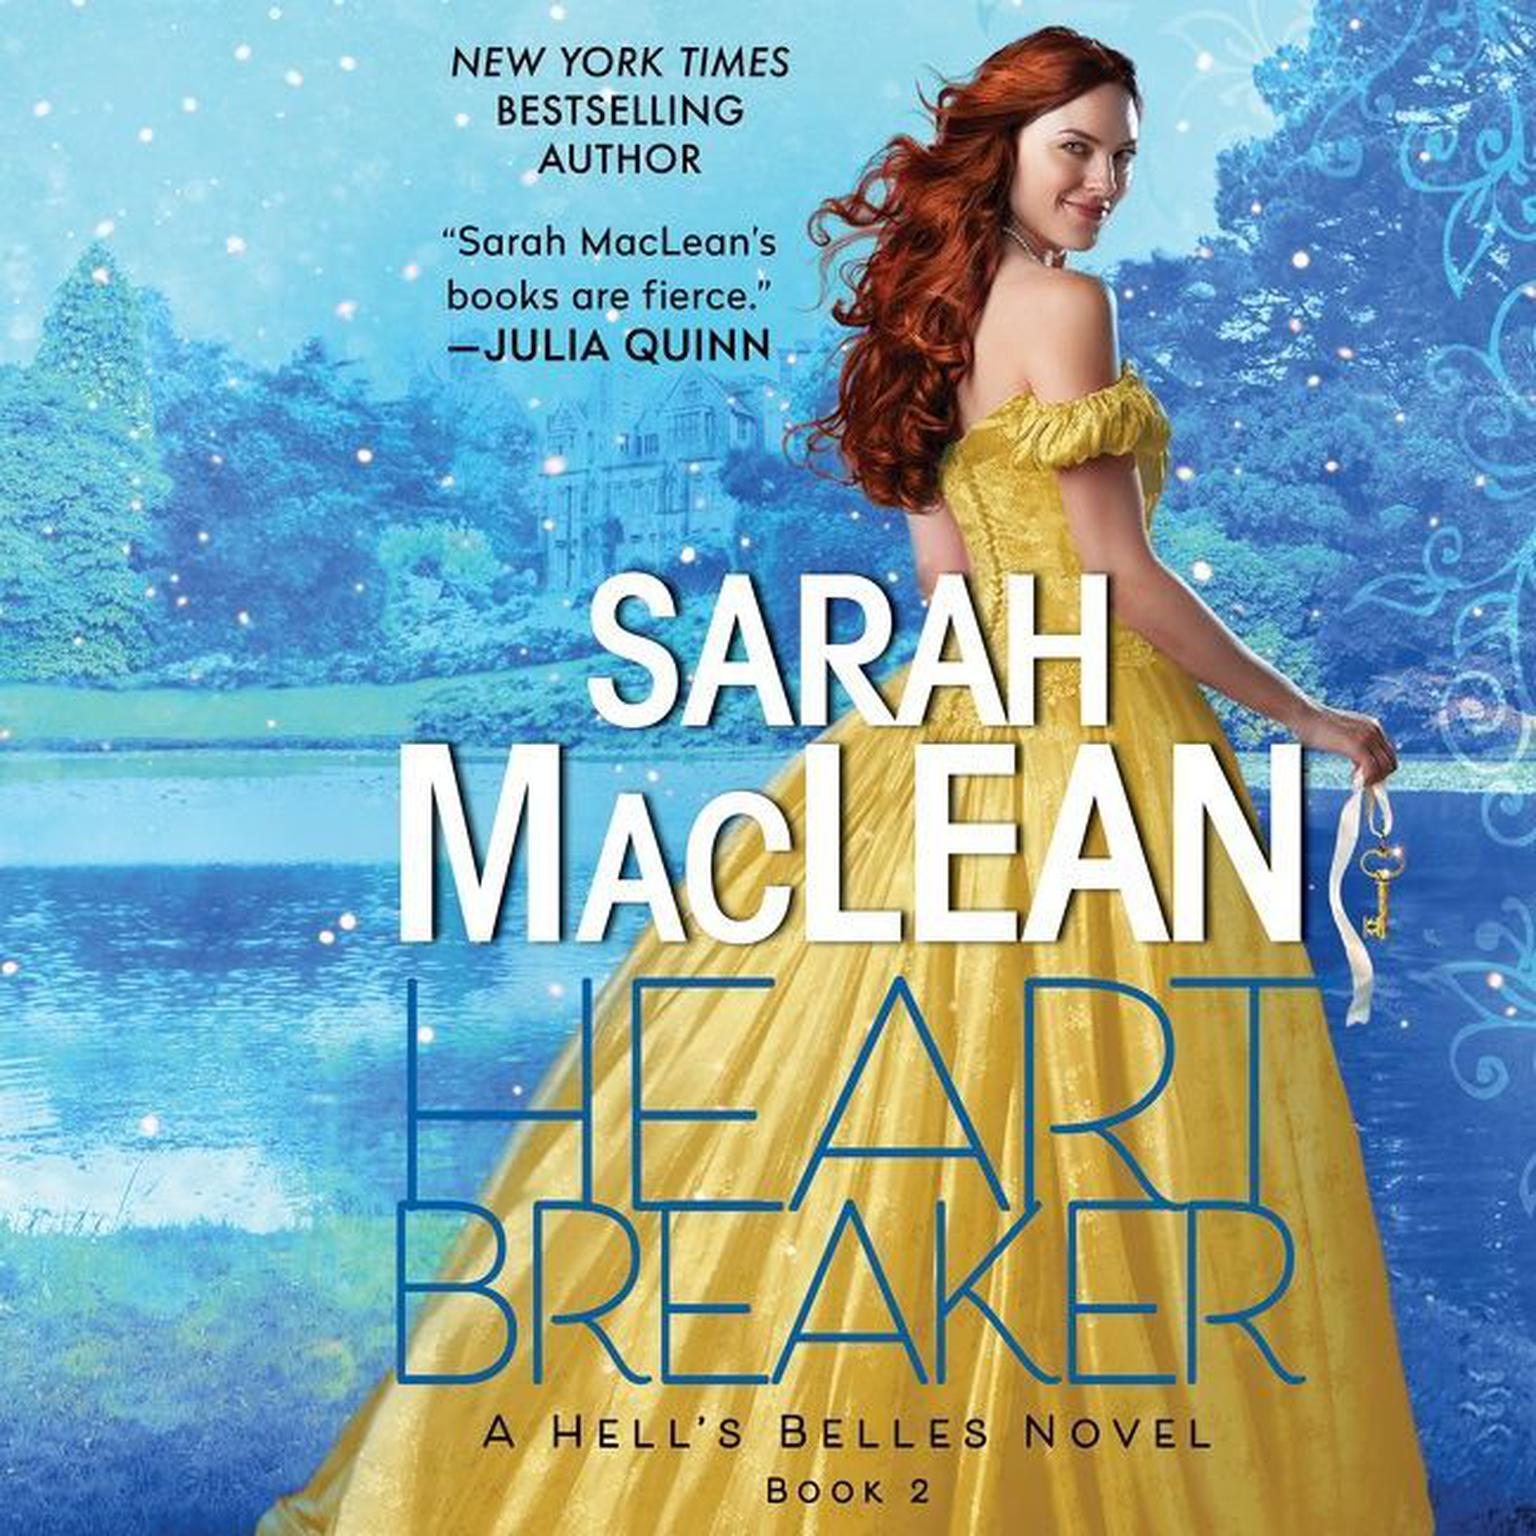 Heartbreaker: A Hells Belles Novel Audiobook, by Sarah MacLean